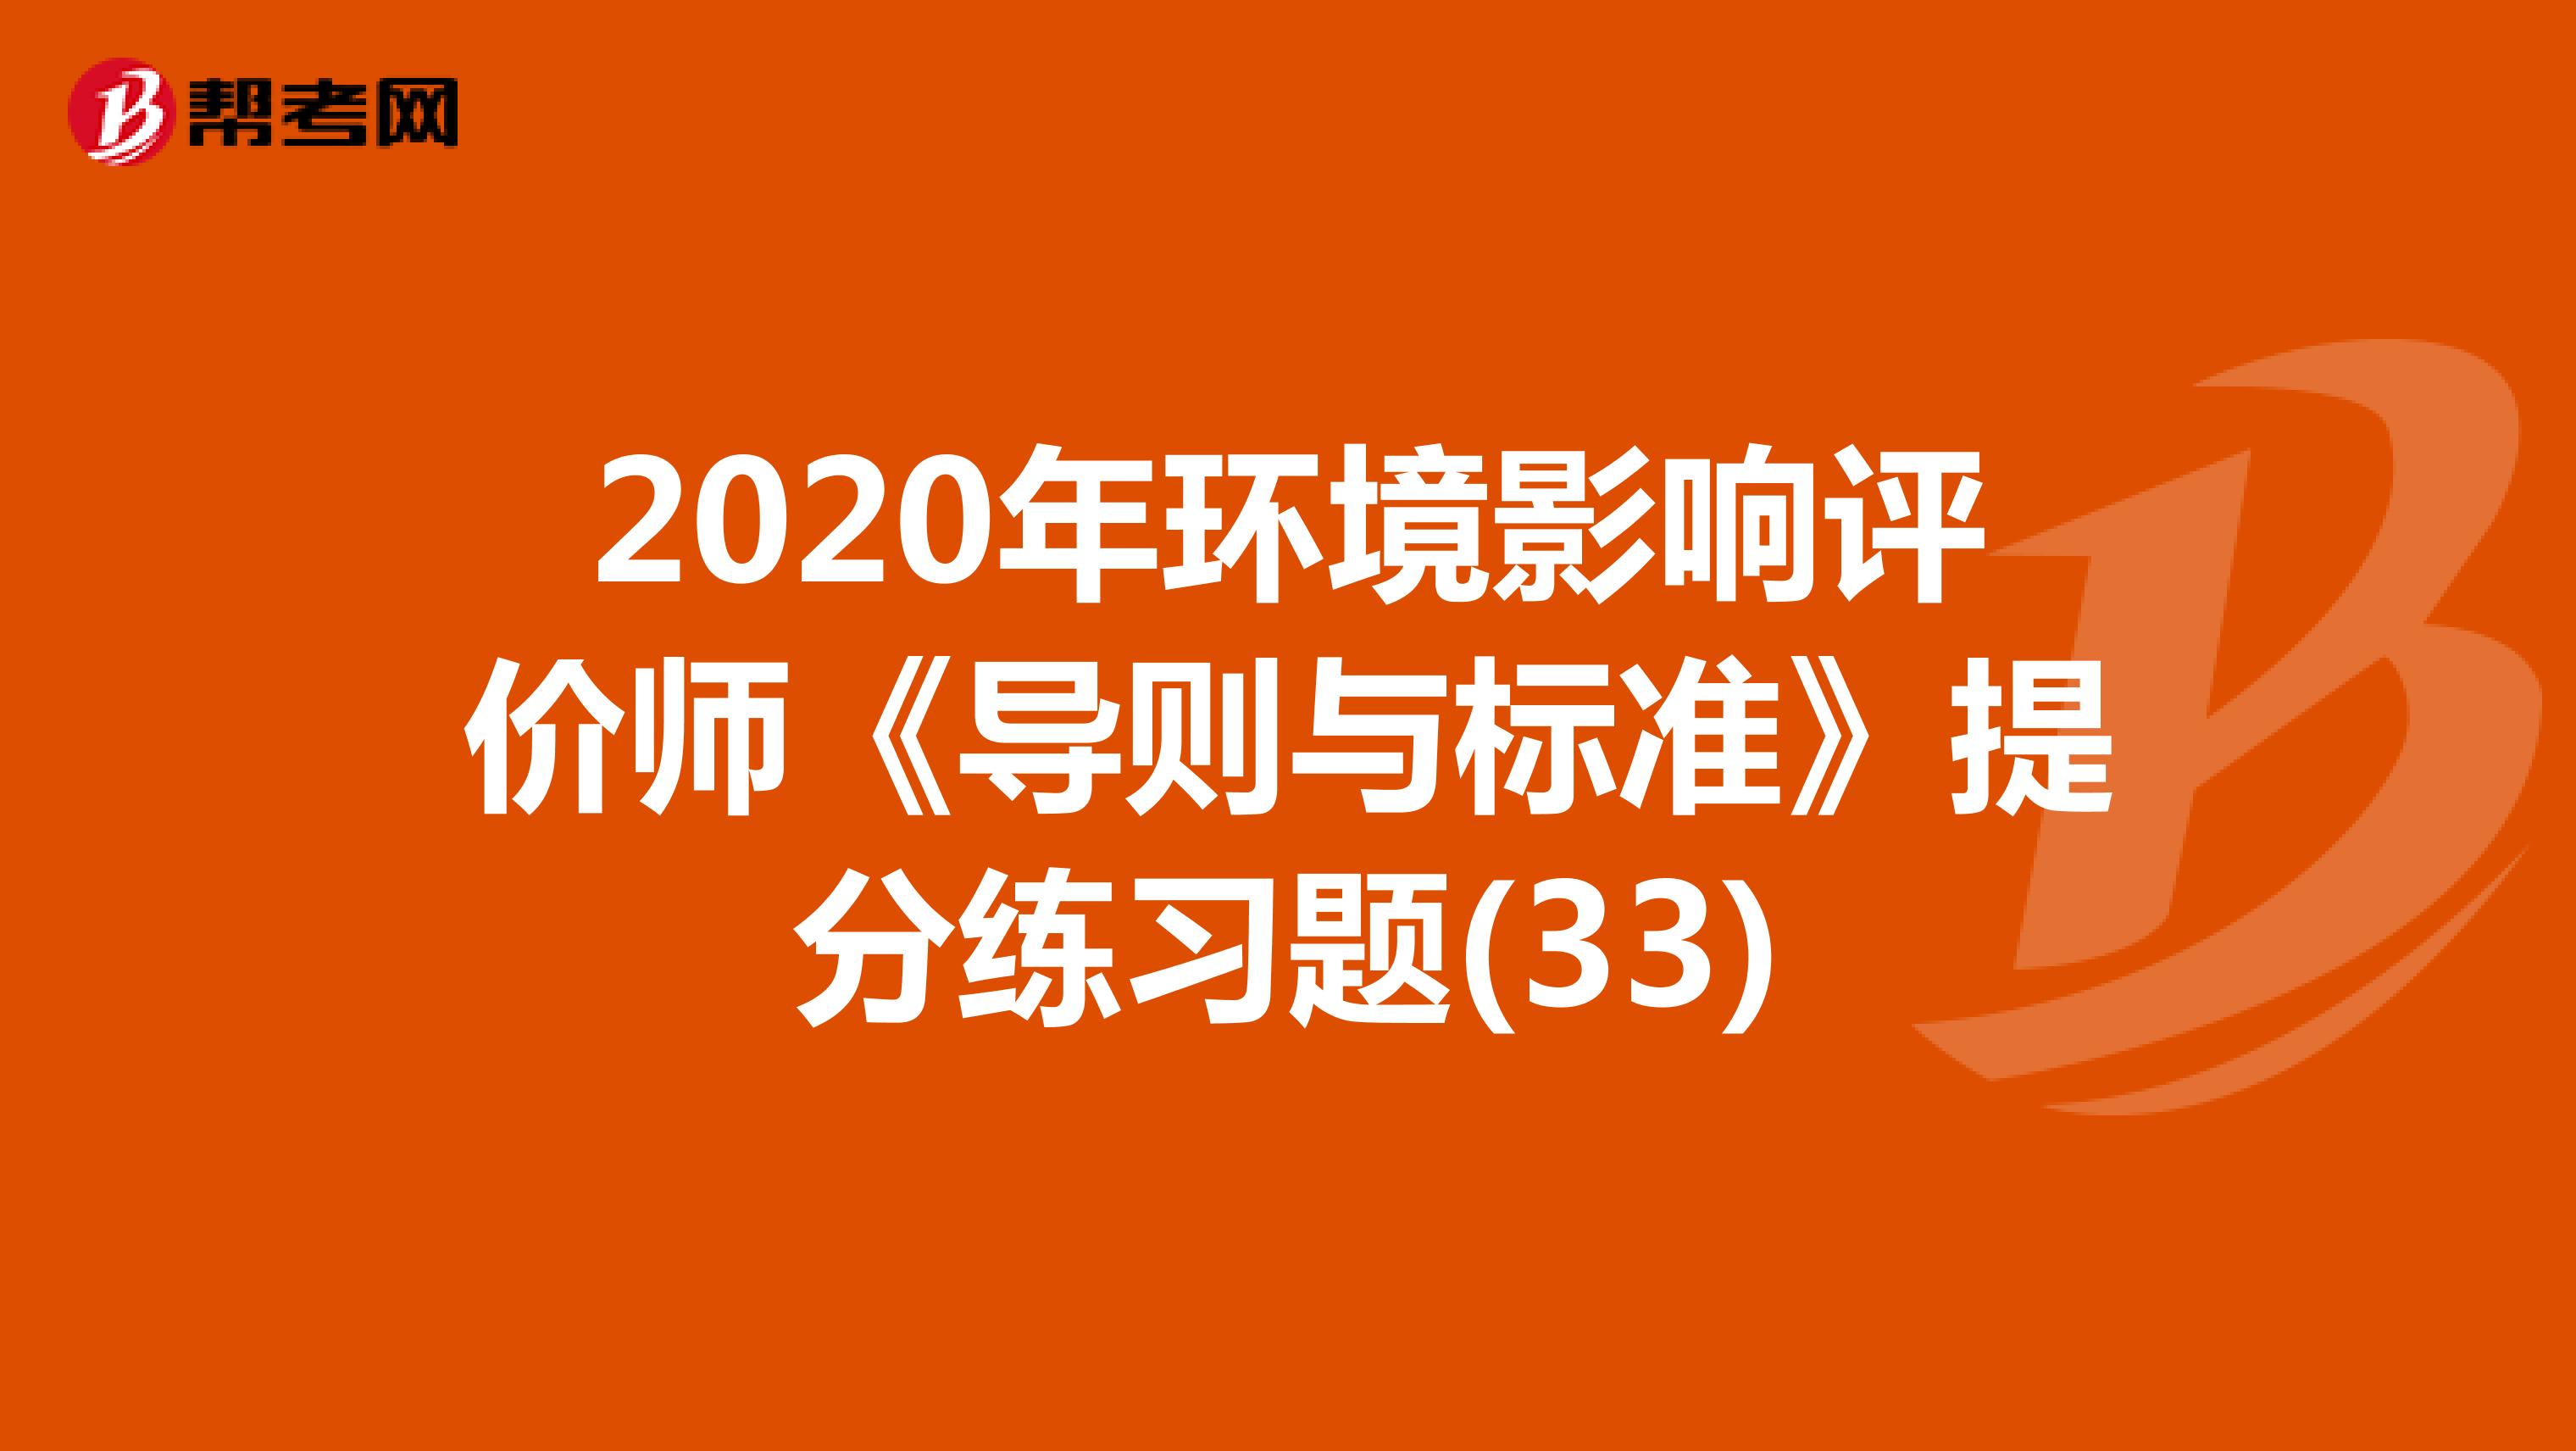 2020年环境影响评价师《导则与标准》提分练习题(33)